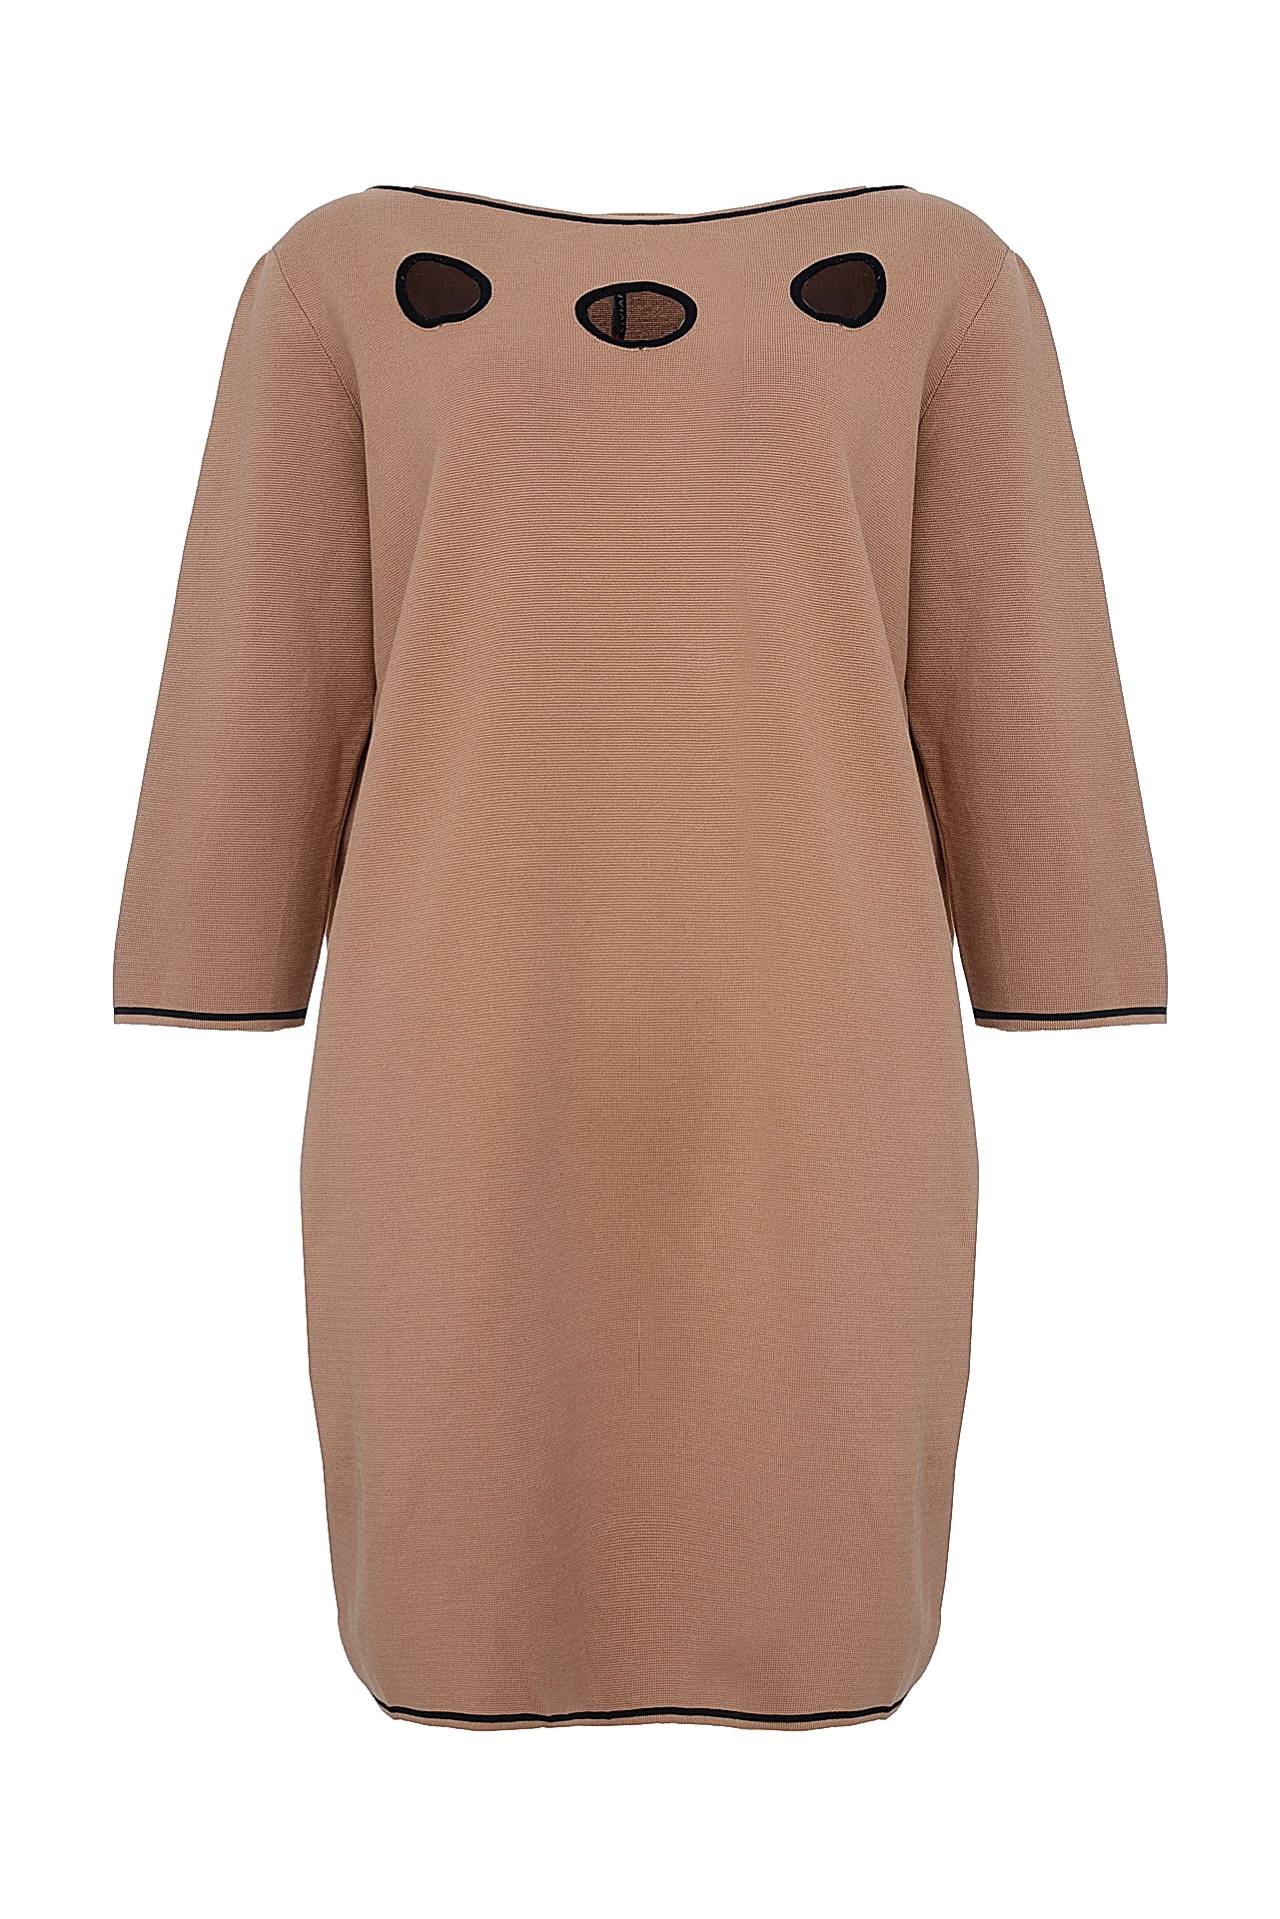 Одежда женская Платье LIVIANA CONTI (F5EB21/15.2). Купить за 11750 руб.